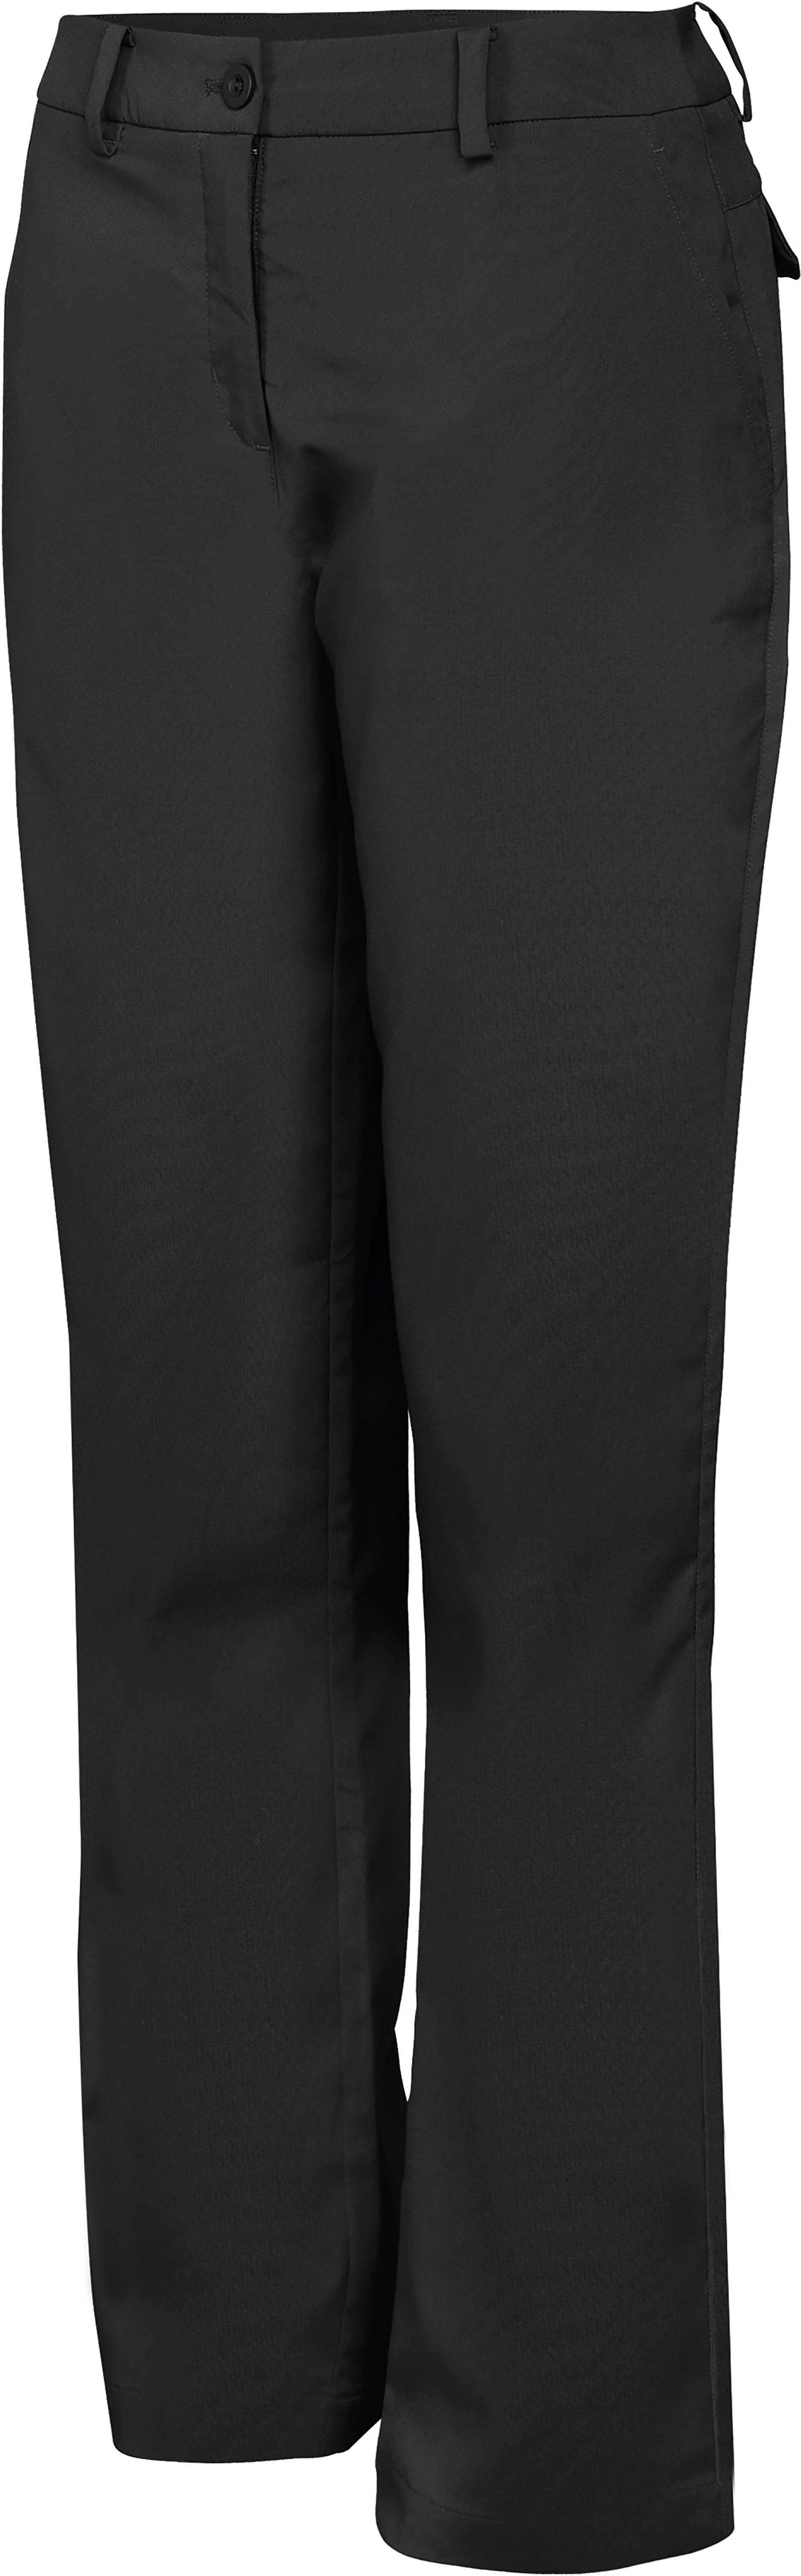 Pantalon technique de golf - PA175 pantalon femme Pro act noir 34 